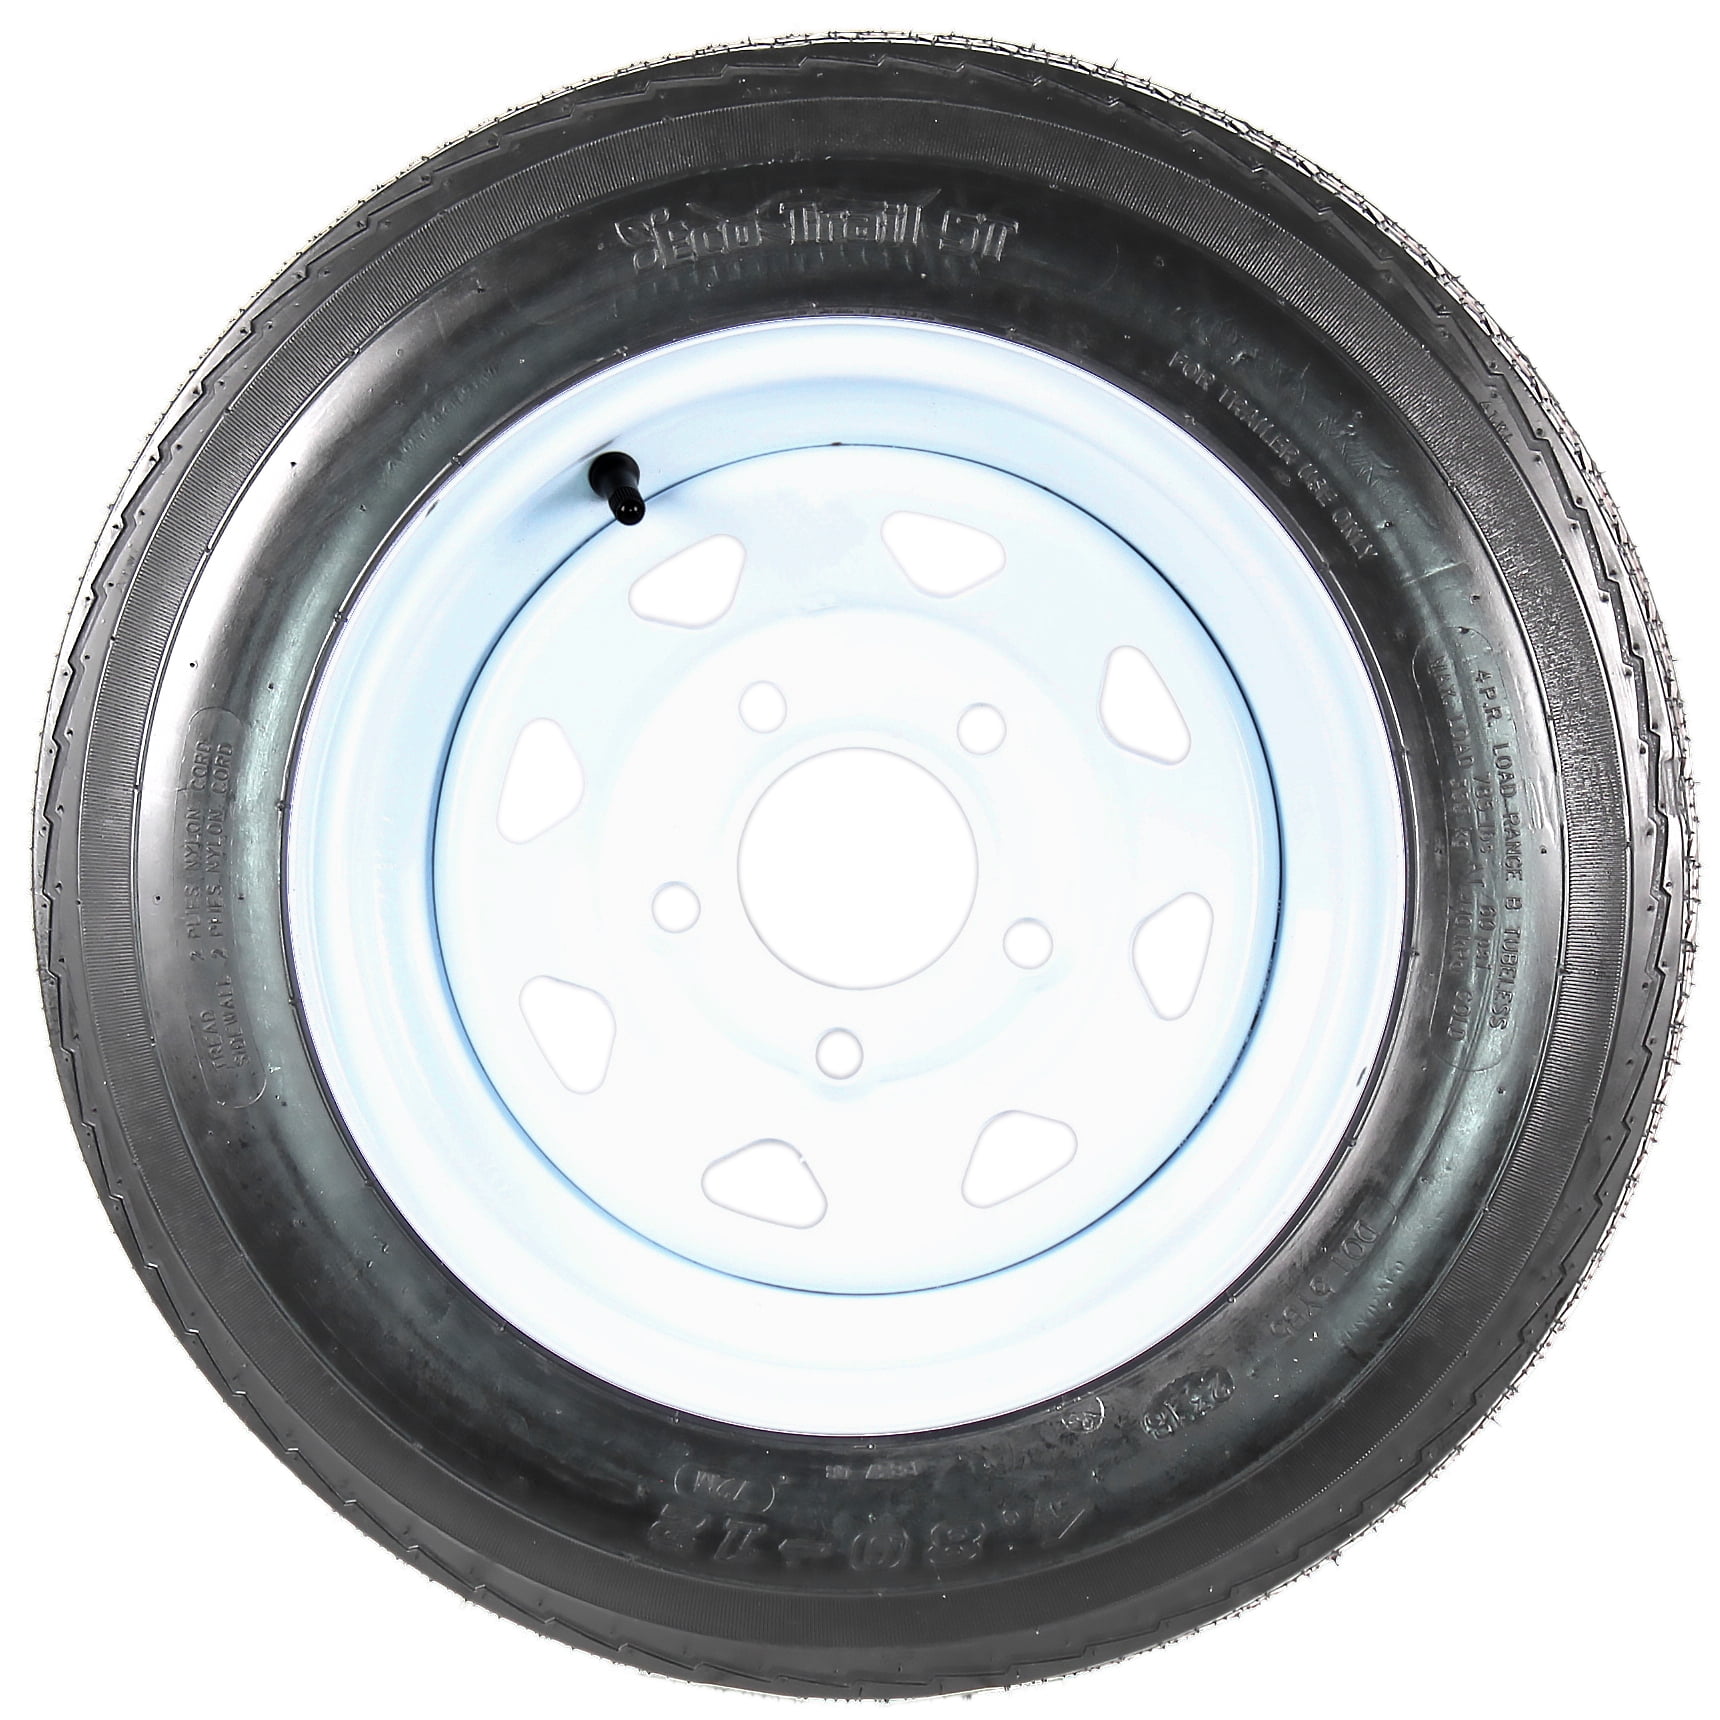 Autoforever 2pc Trailer Tires & Rims 4.80-12 480-12 4.80 X 12 5 Lug Wheel White Spoke 4 Ply